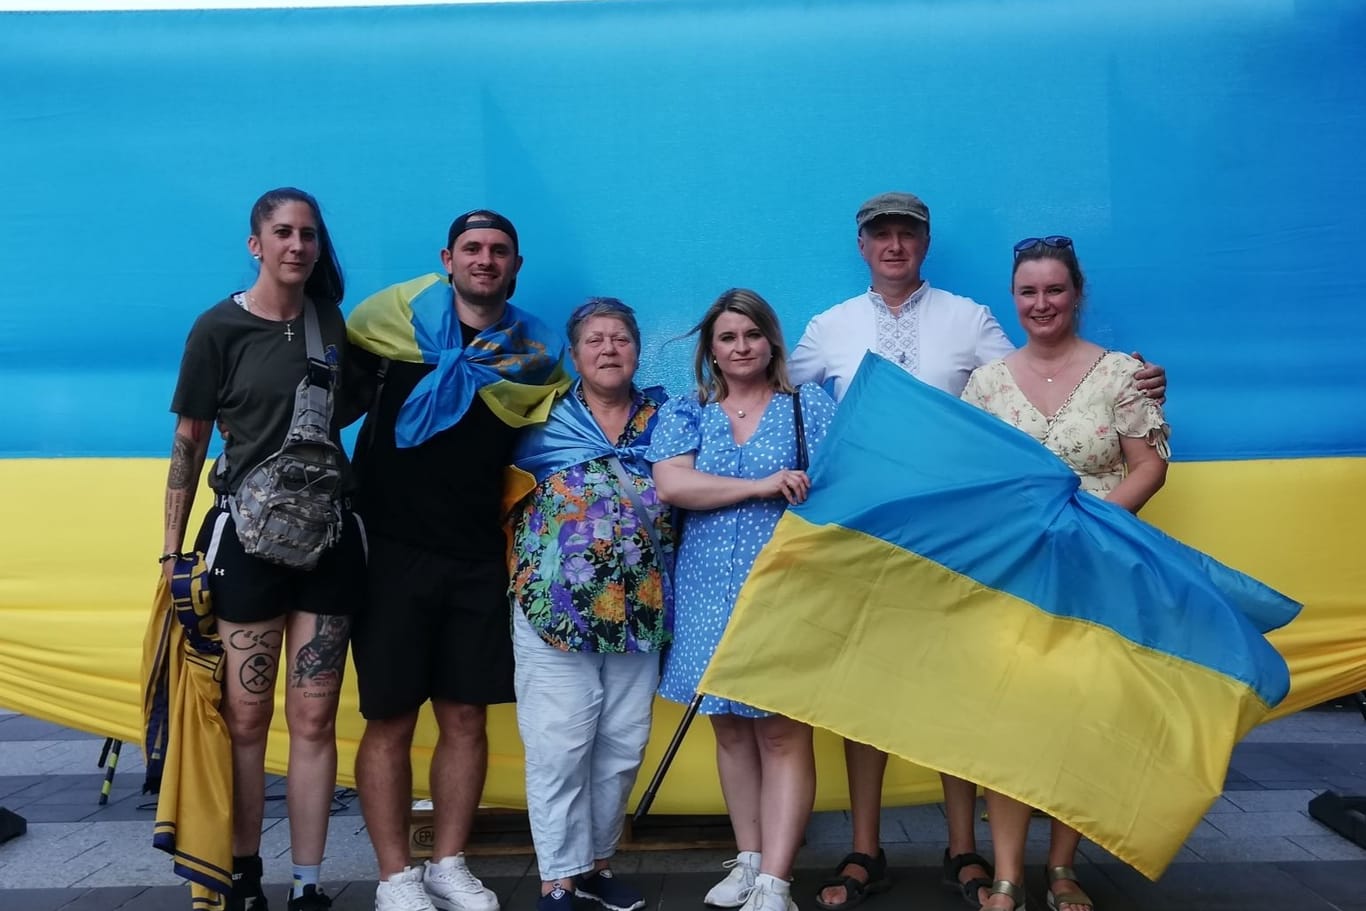 Ukrainer in Nürnberg: Am Donnerstag organisiert die ukrainische Community in Nürnberg eine Demonstration zum Unabhängigkeitstags ihres Heimatlandes.